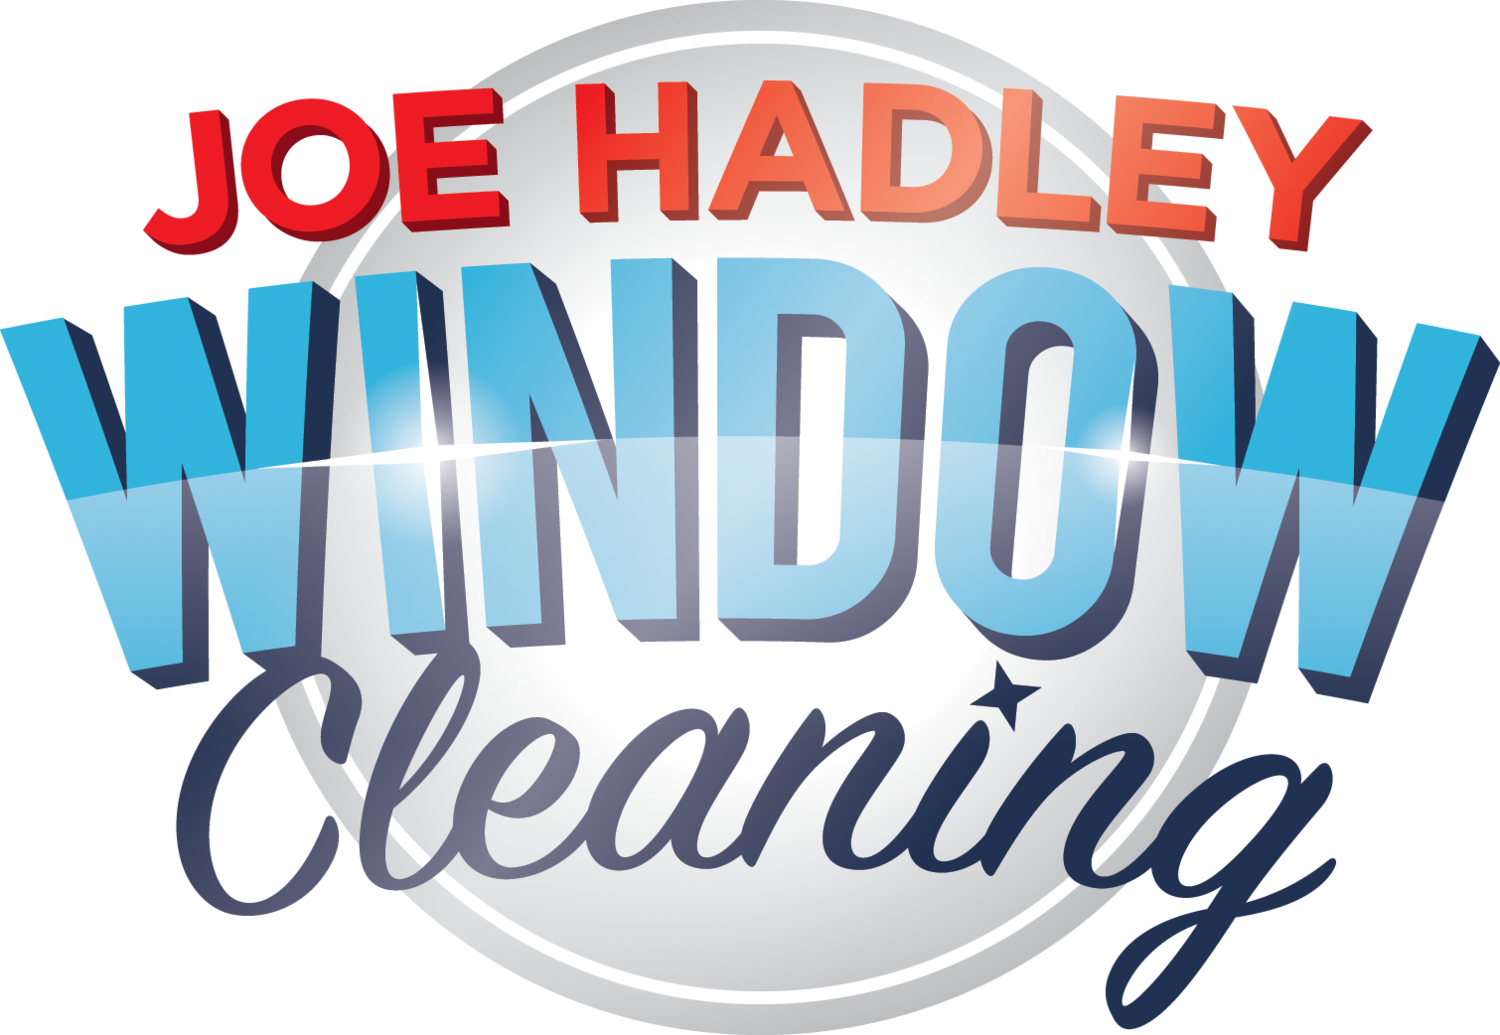 Joe Hadley Window Cleaning